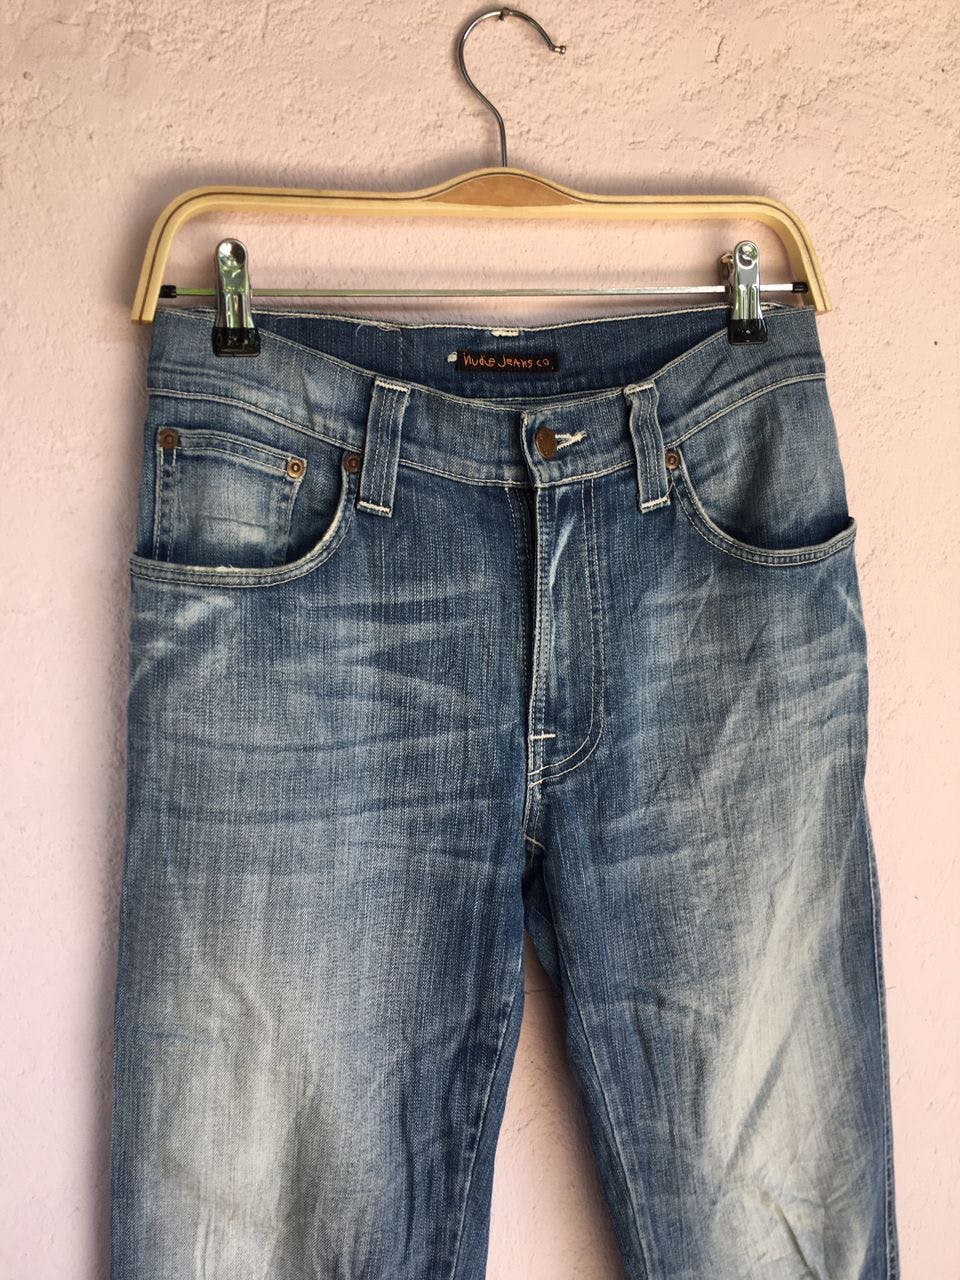 Nudie jeans.co Denim Slim jeans Men’s Pants made in Italy - 6